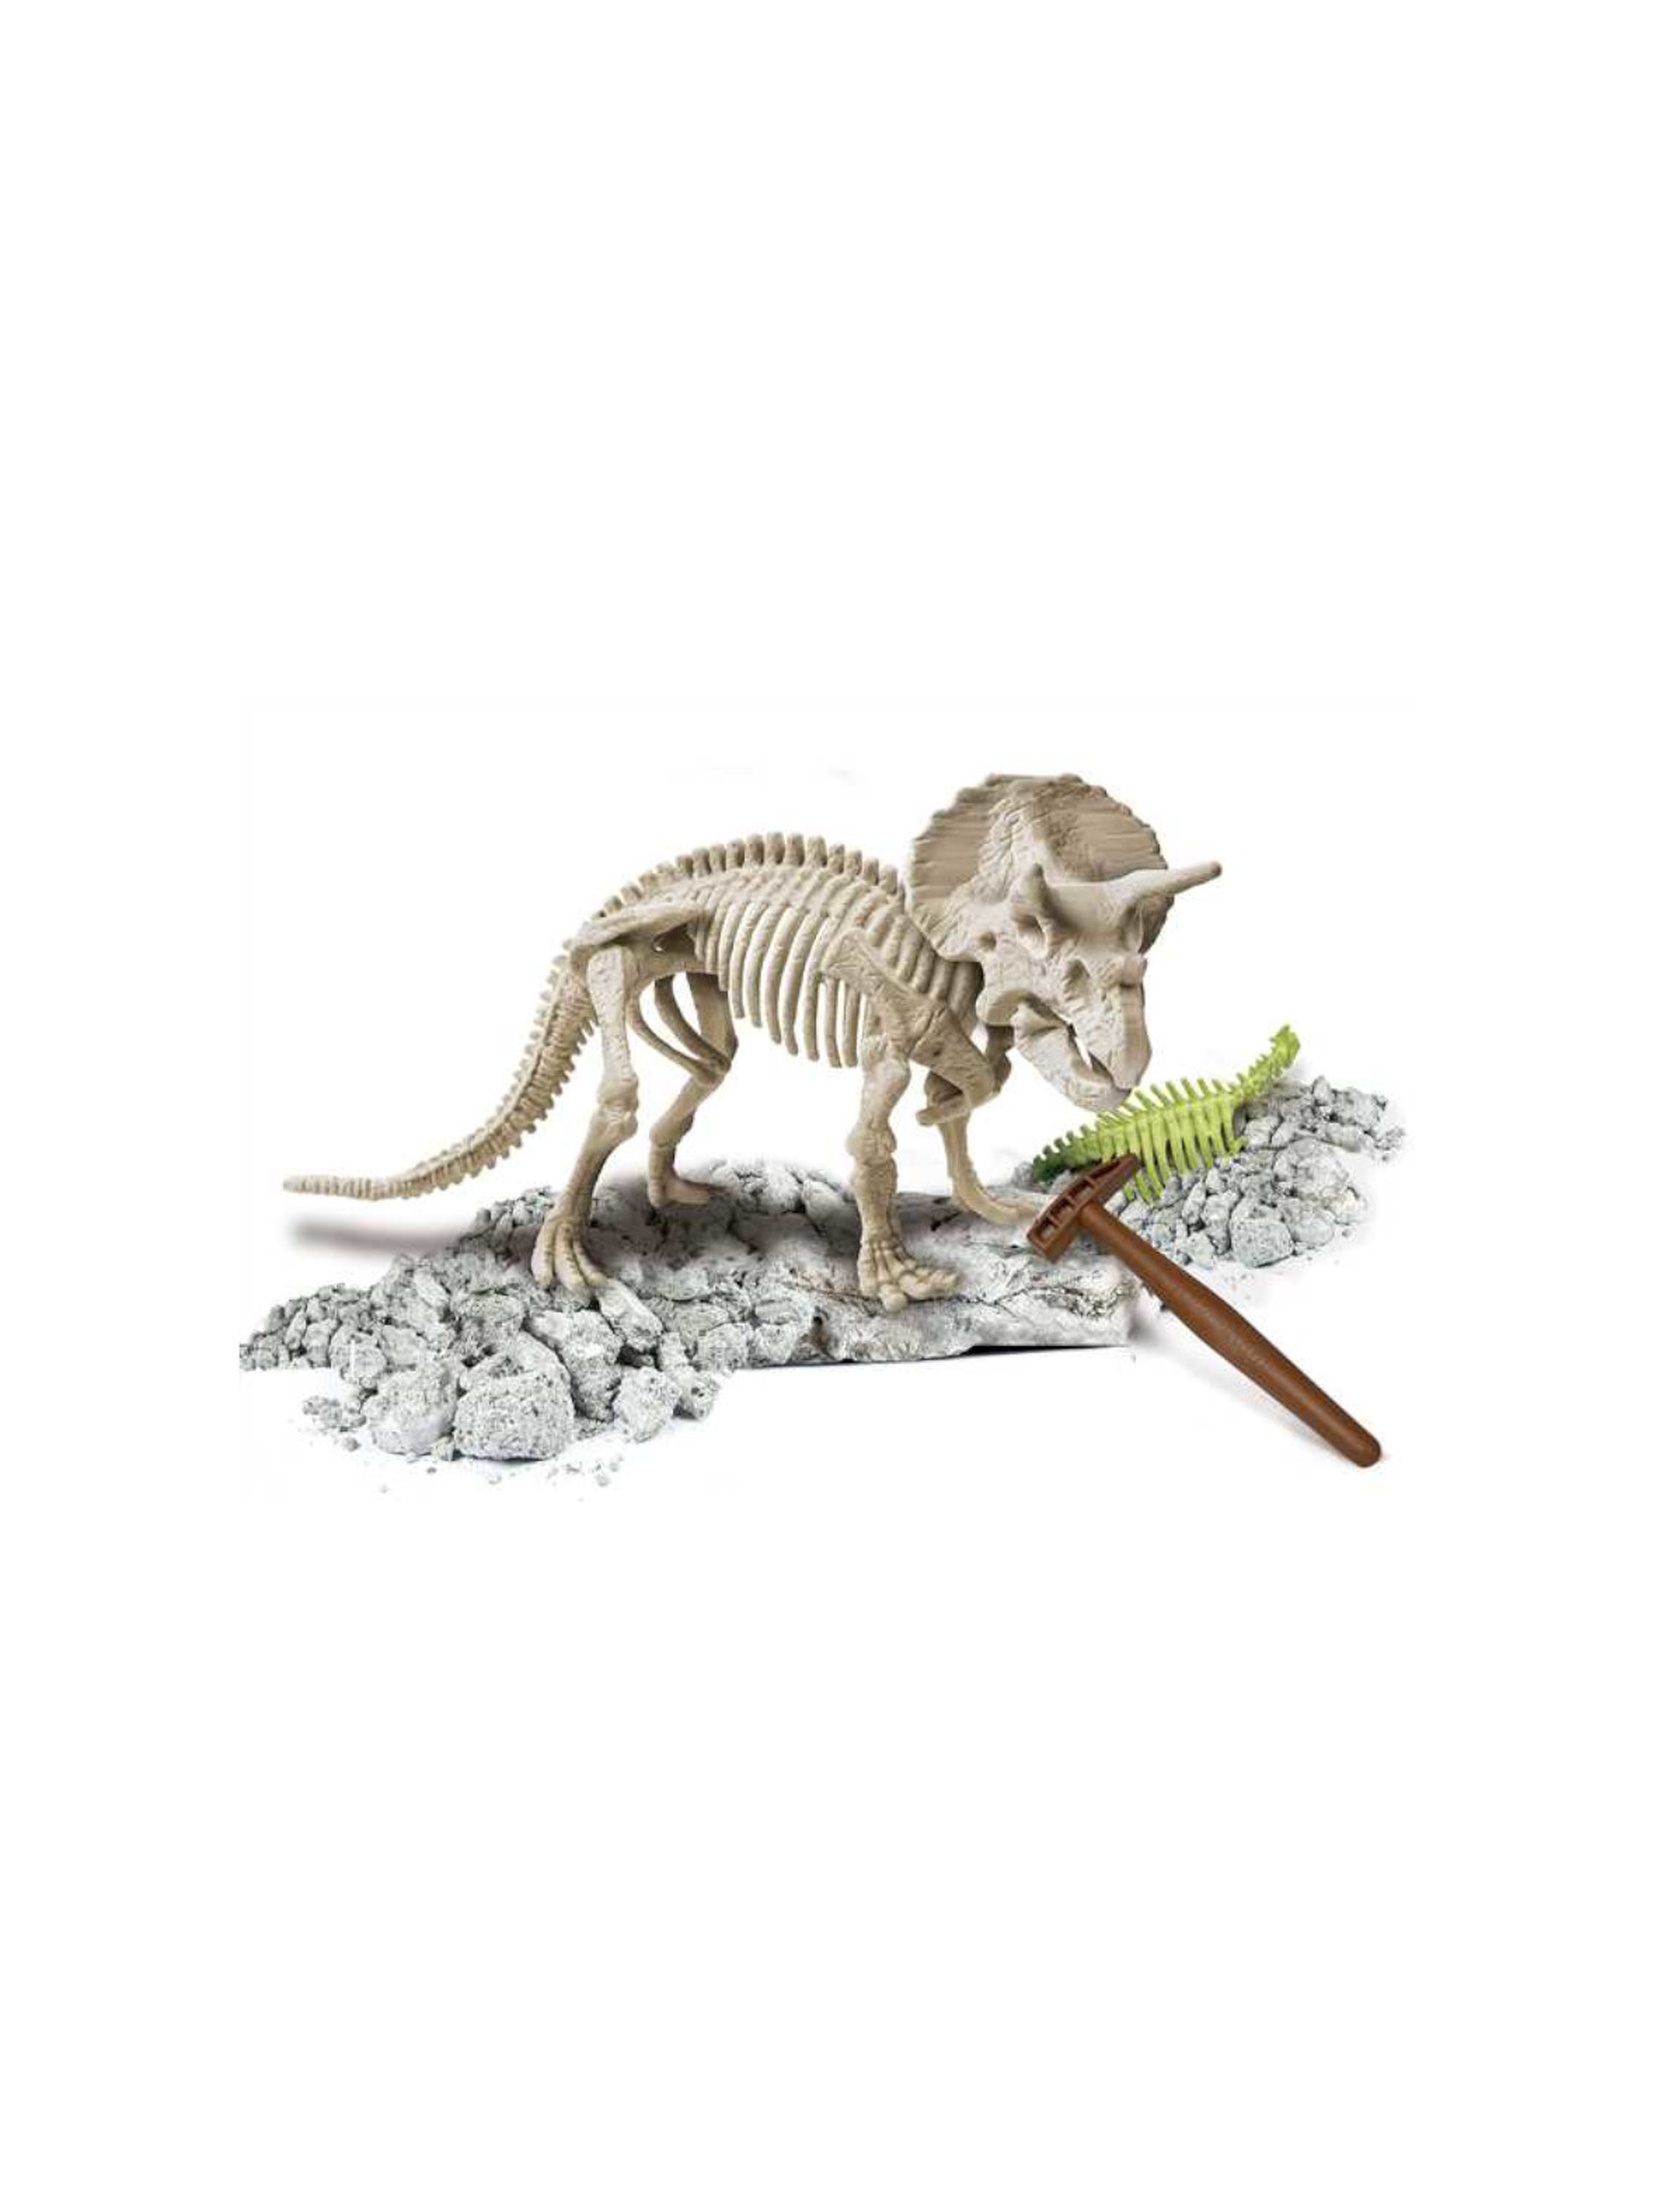 Skamieniałości - Triceratops fluorescencyjny